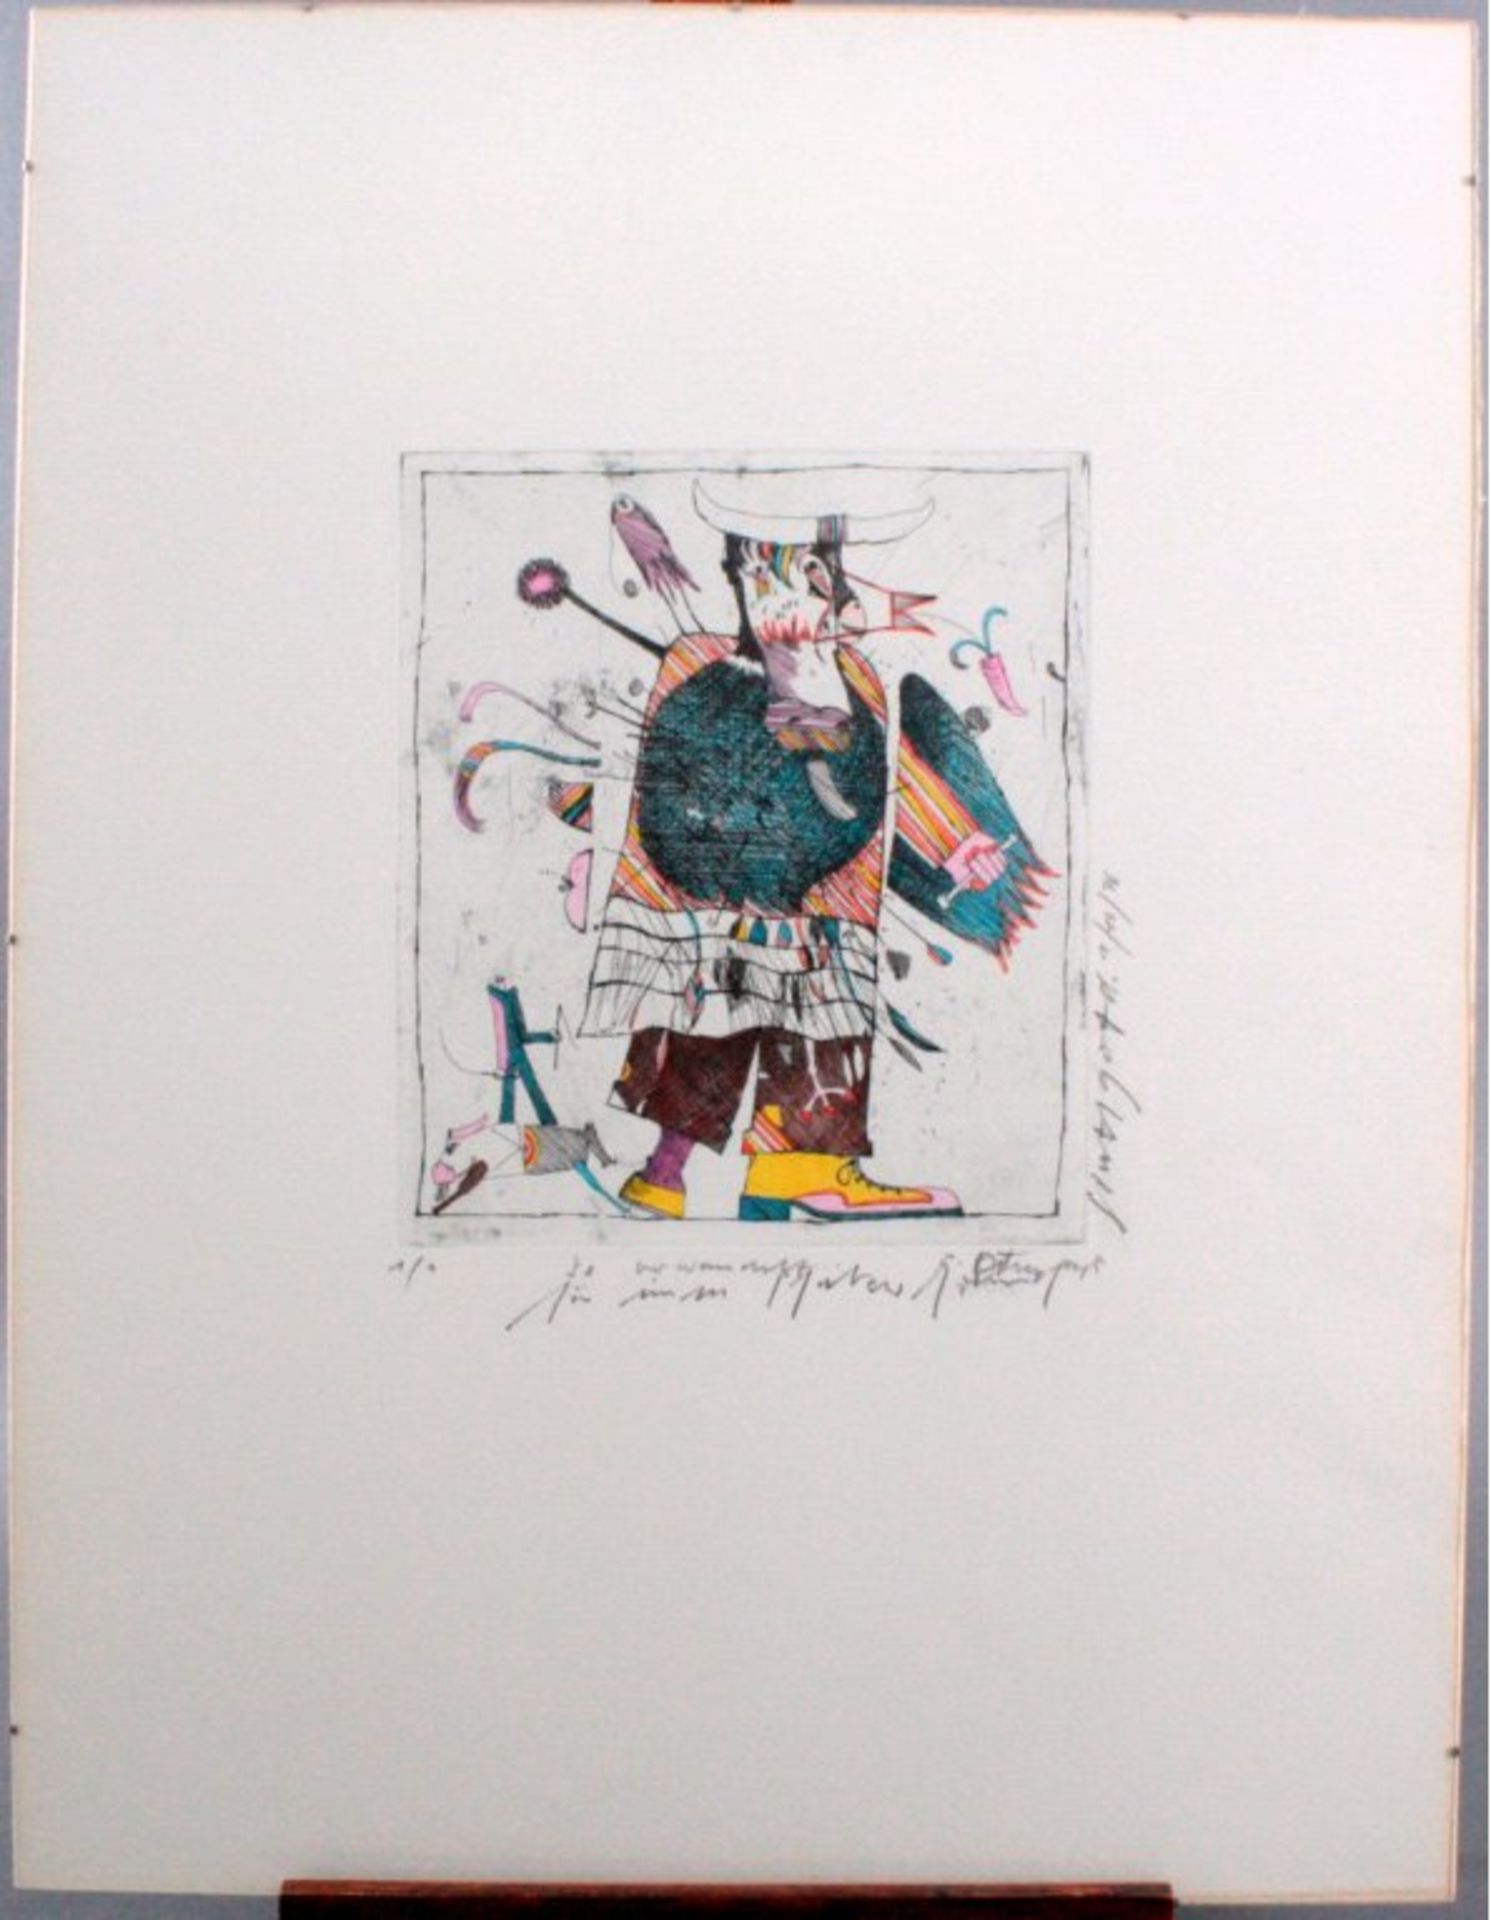 LithographieMit Bleistift signiert und datiert, Stuttgart 1.10.76, ca.65 x 50 cm